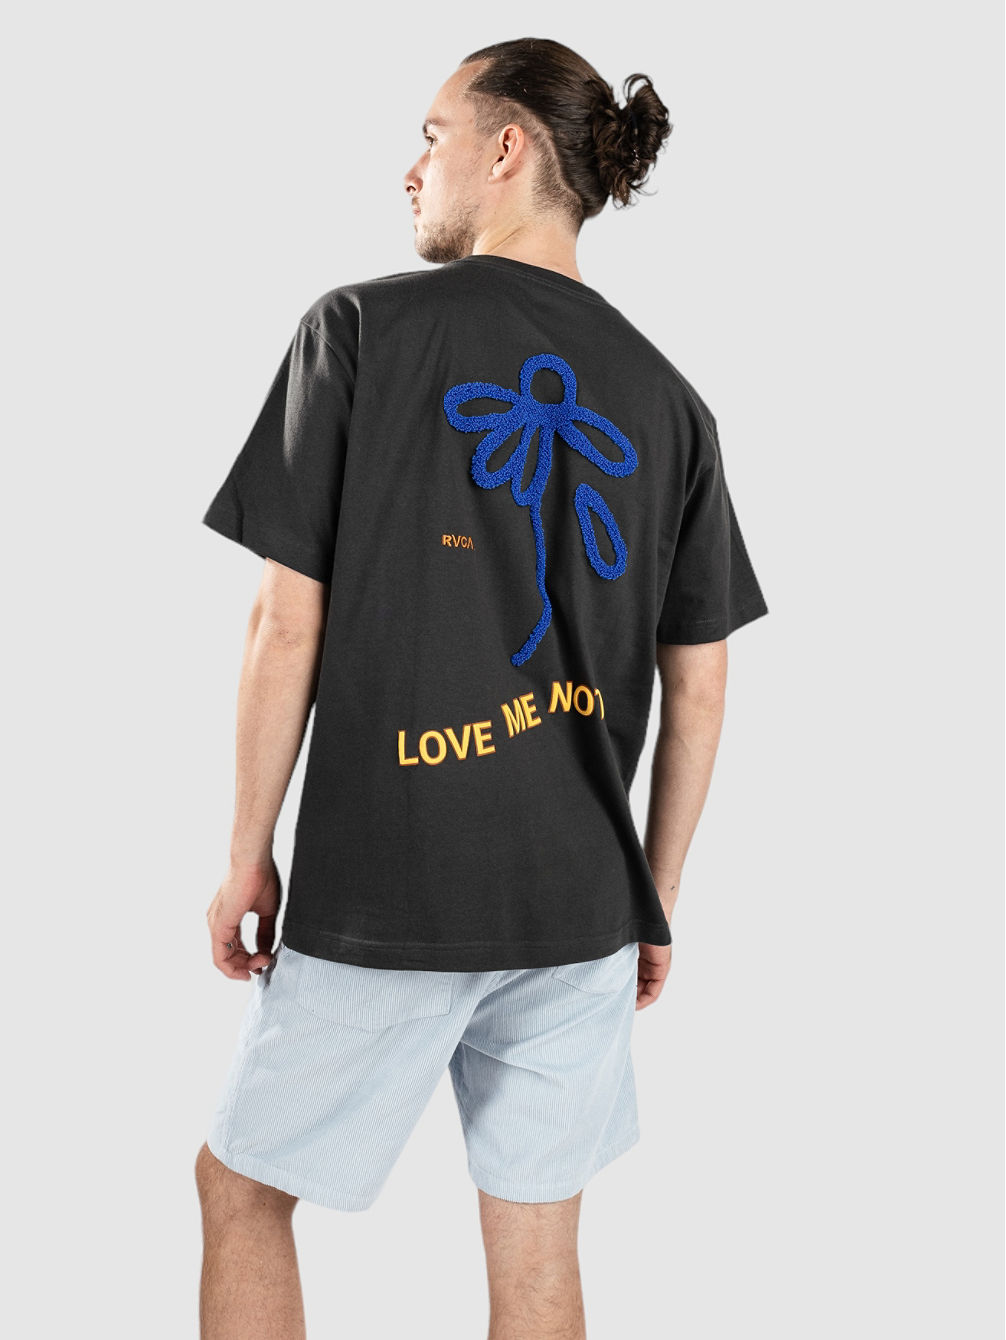 Love Me Not T-Shirt